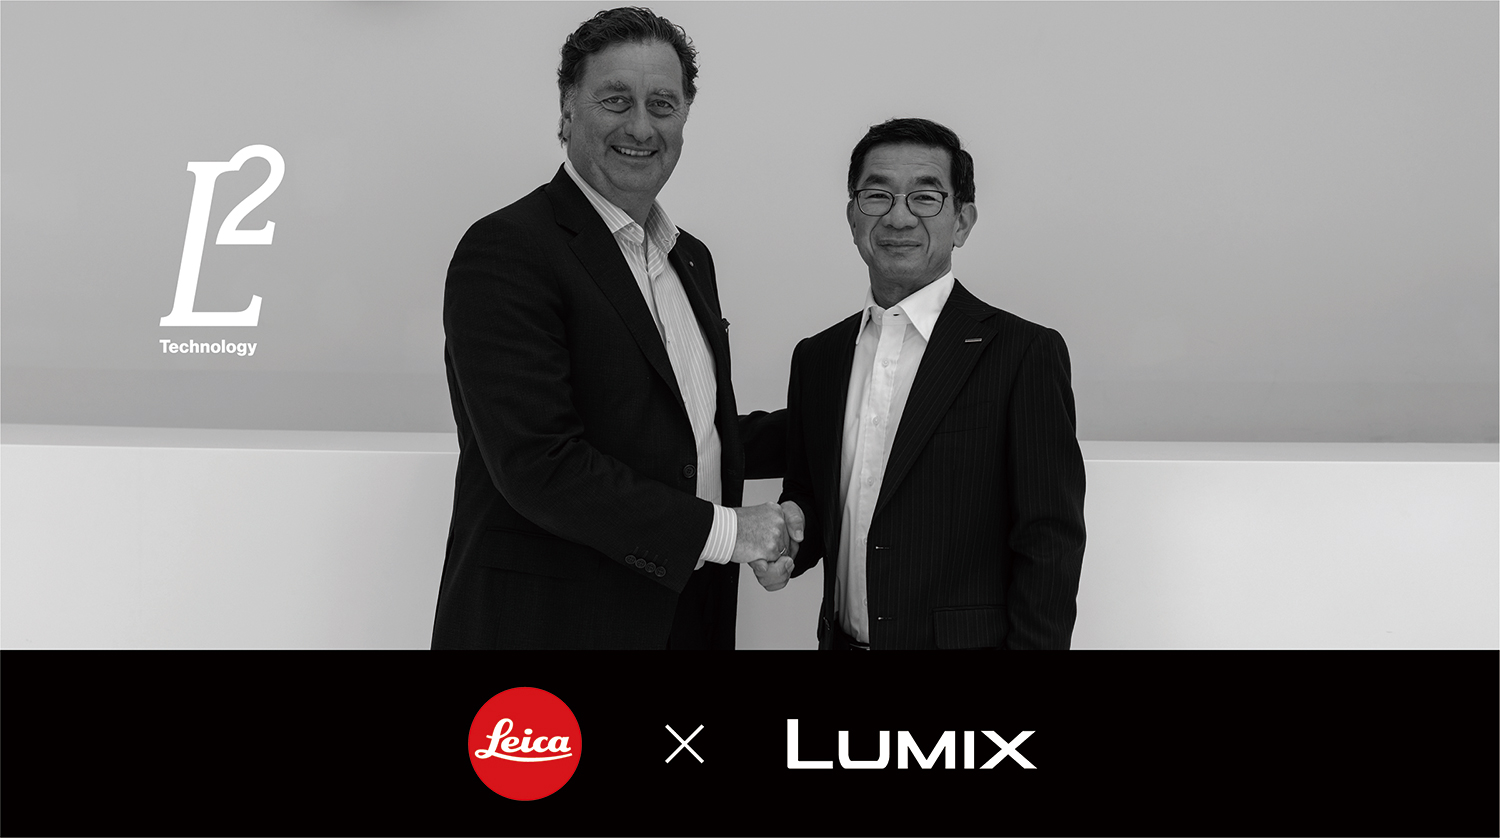 Leica și Panasonic au semnat un acord de colaborare strategică cuprinzătoare și au dezvoltat ''Tehnologia L²'' ca simbol al acestei colaborări